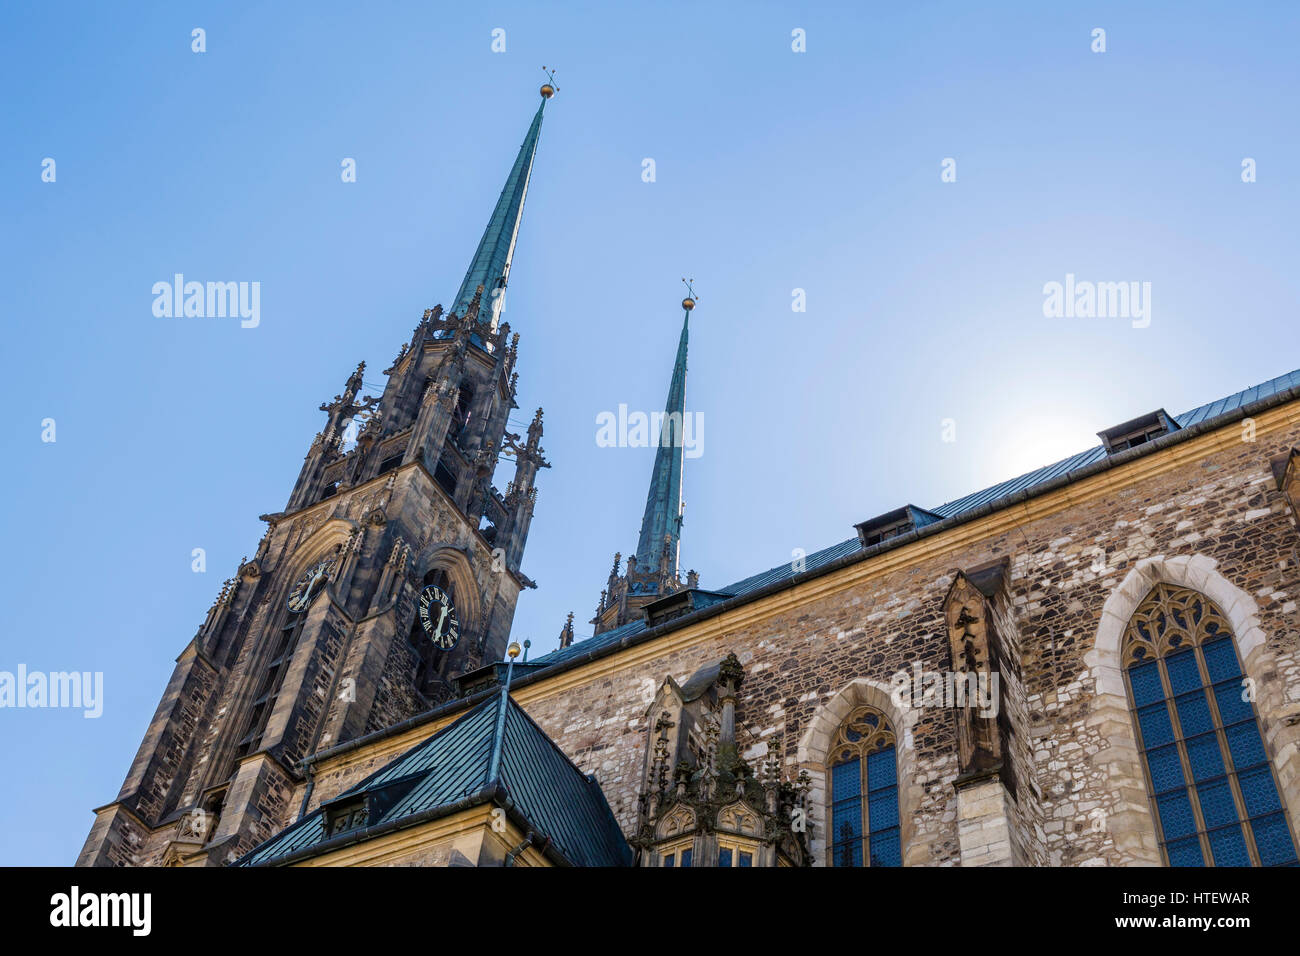 La cathédrale de Brno. Cathédrale des Saints Pierre et Paul, la colline de Petrov, Brno, Moravie, République Tchèque Banque D'Images